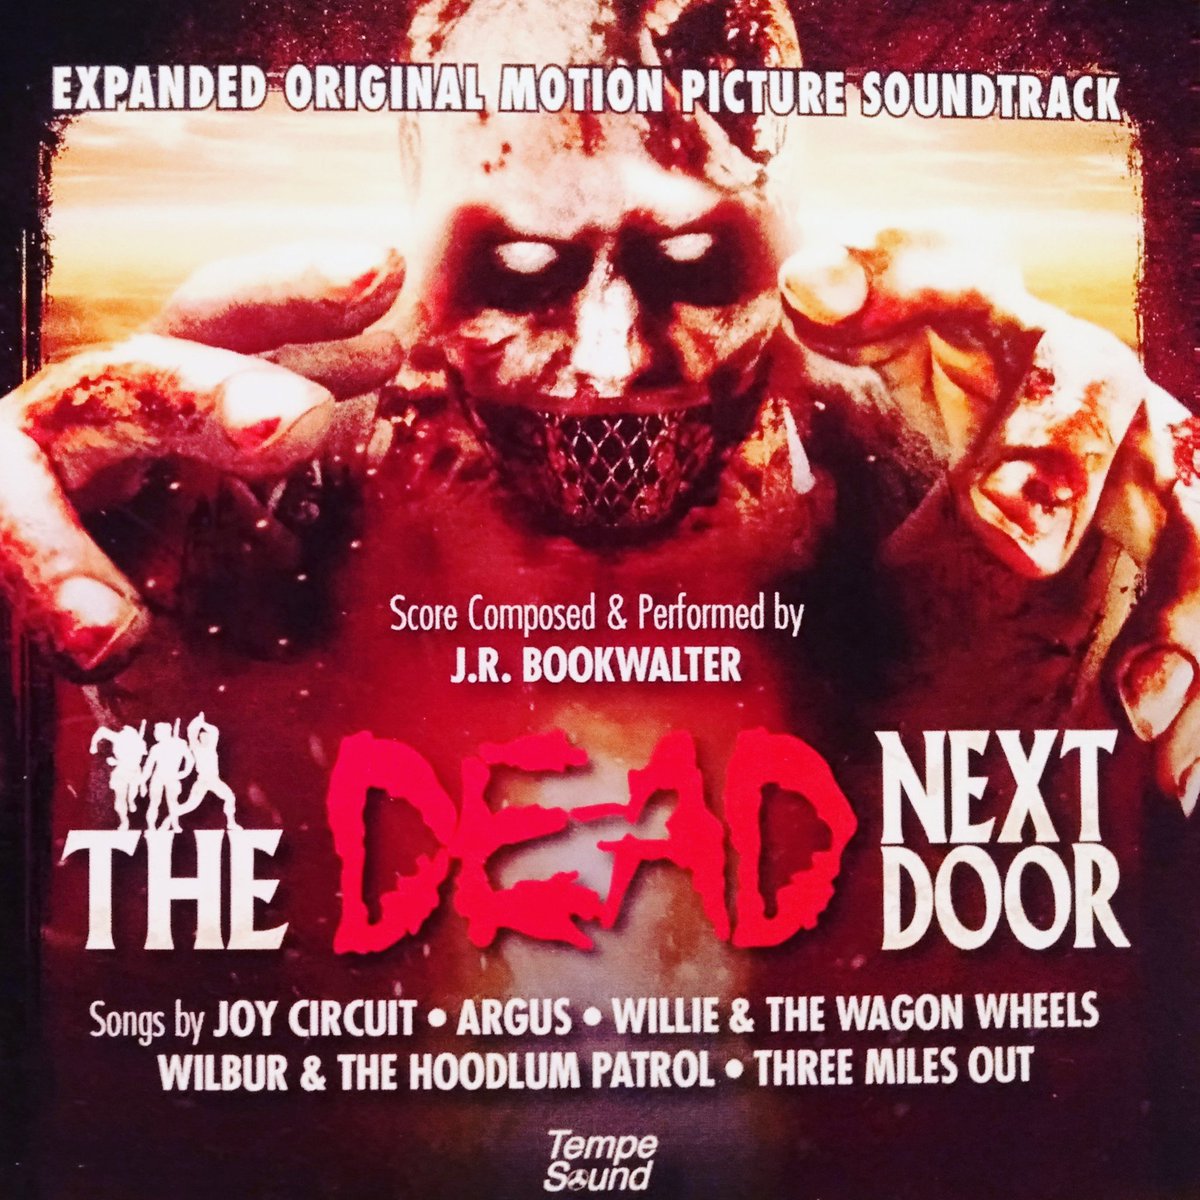 ファイブス 新 死霊のはらわた のサントラ盤到着 Jrbookwalter Thedeadnextdoor Zombiemovie Soundtrack